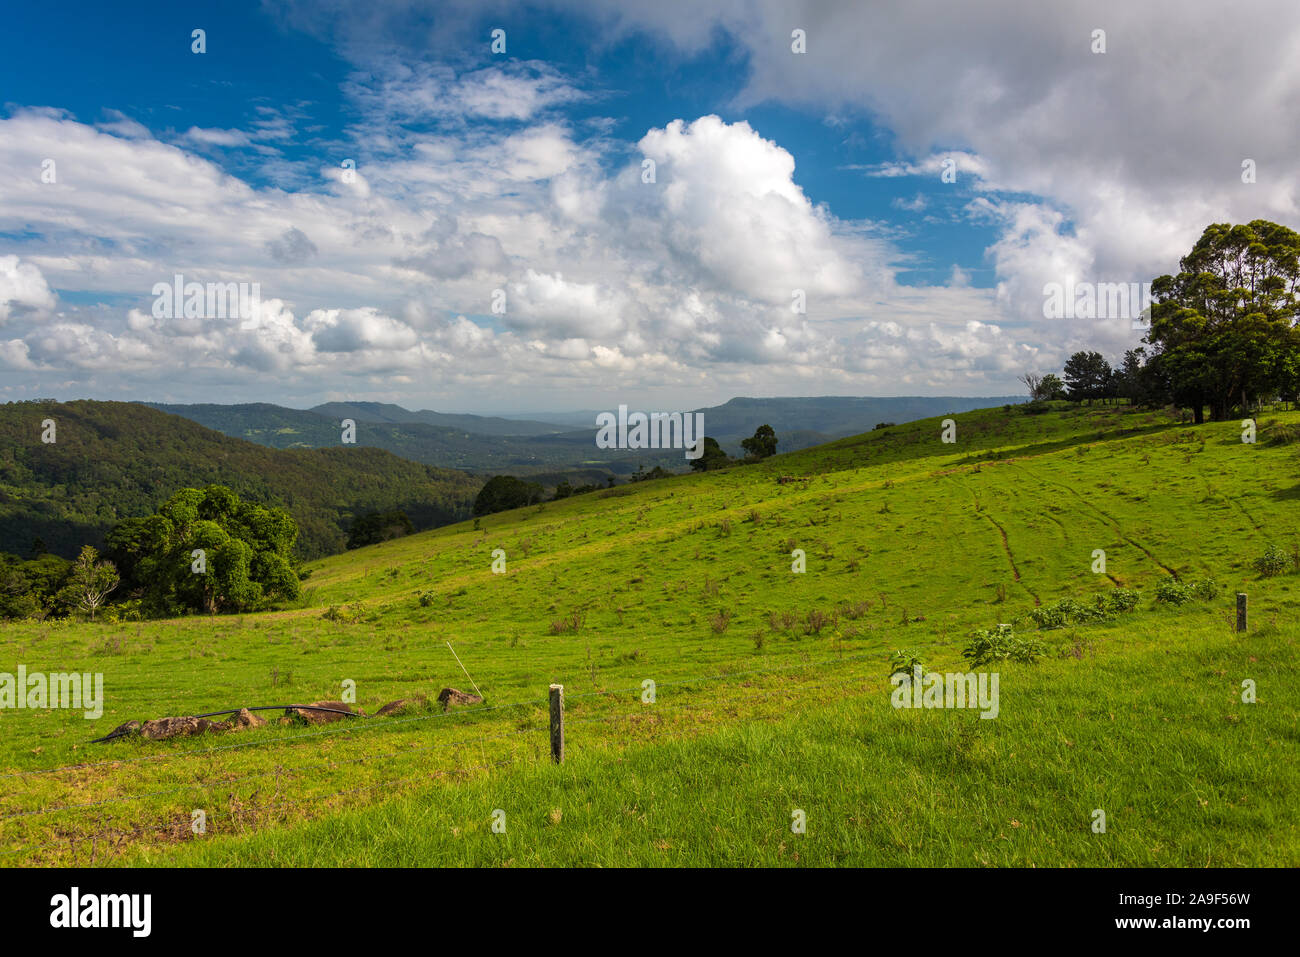 Agricoltura paesaggio di verde pascolo con la foresta pluviale tropicale sullo sfondo Foto Stock